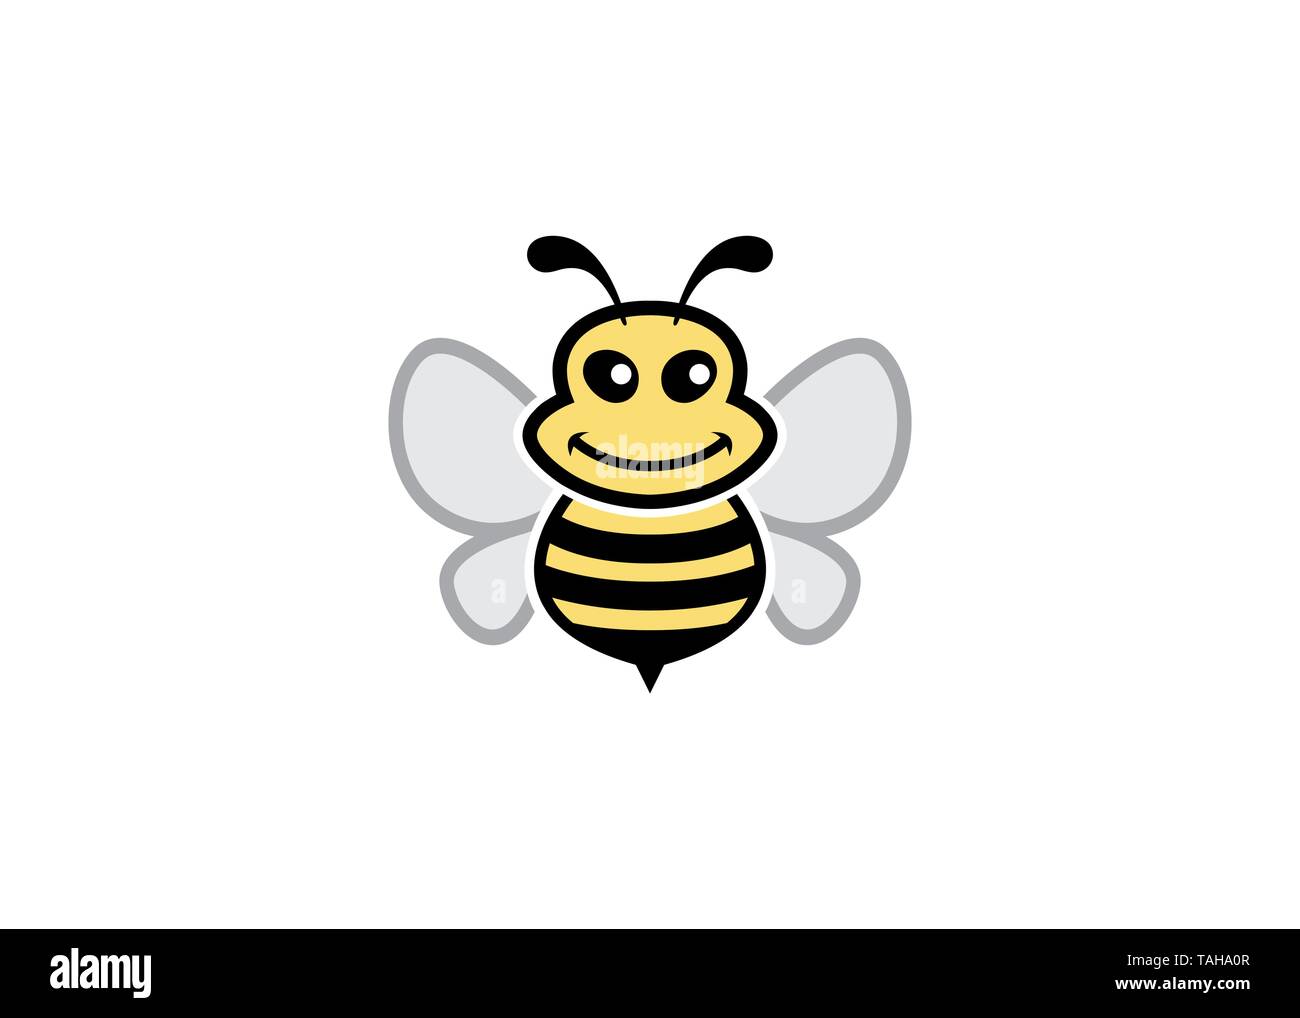 Creative Bumble Bee Logo Stock Vector